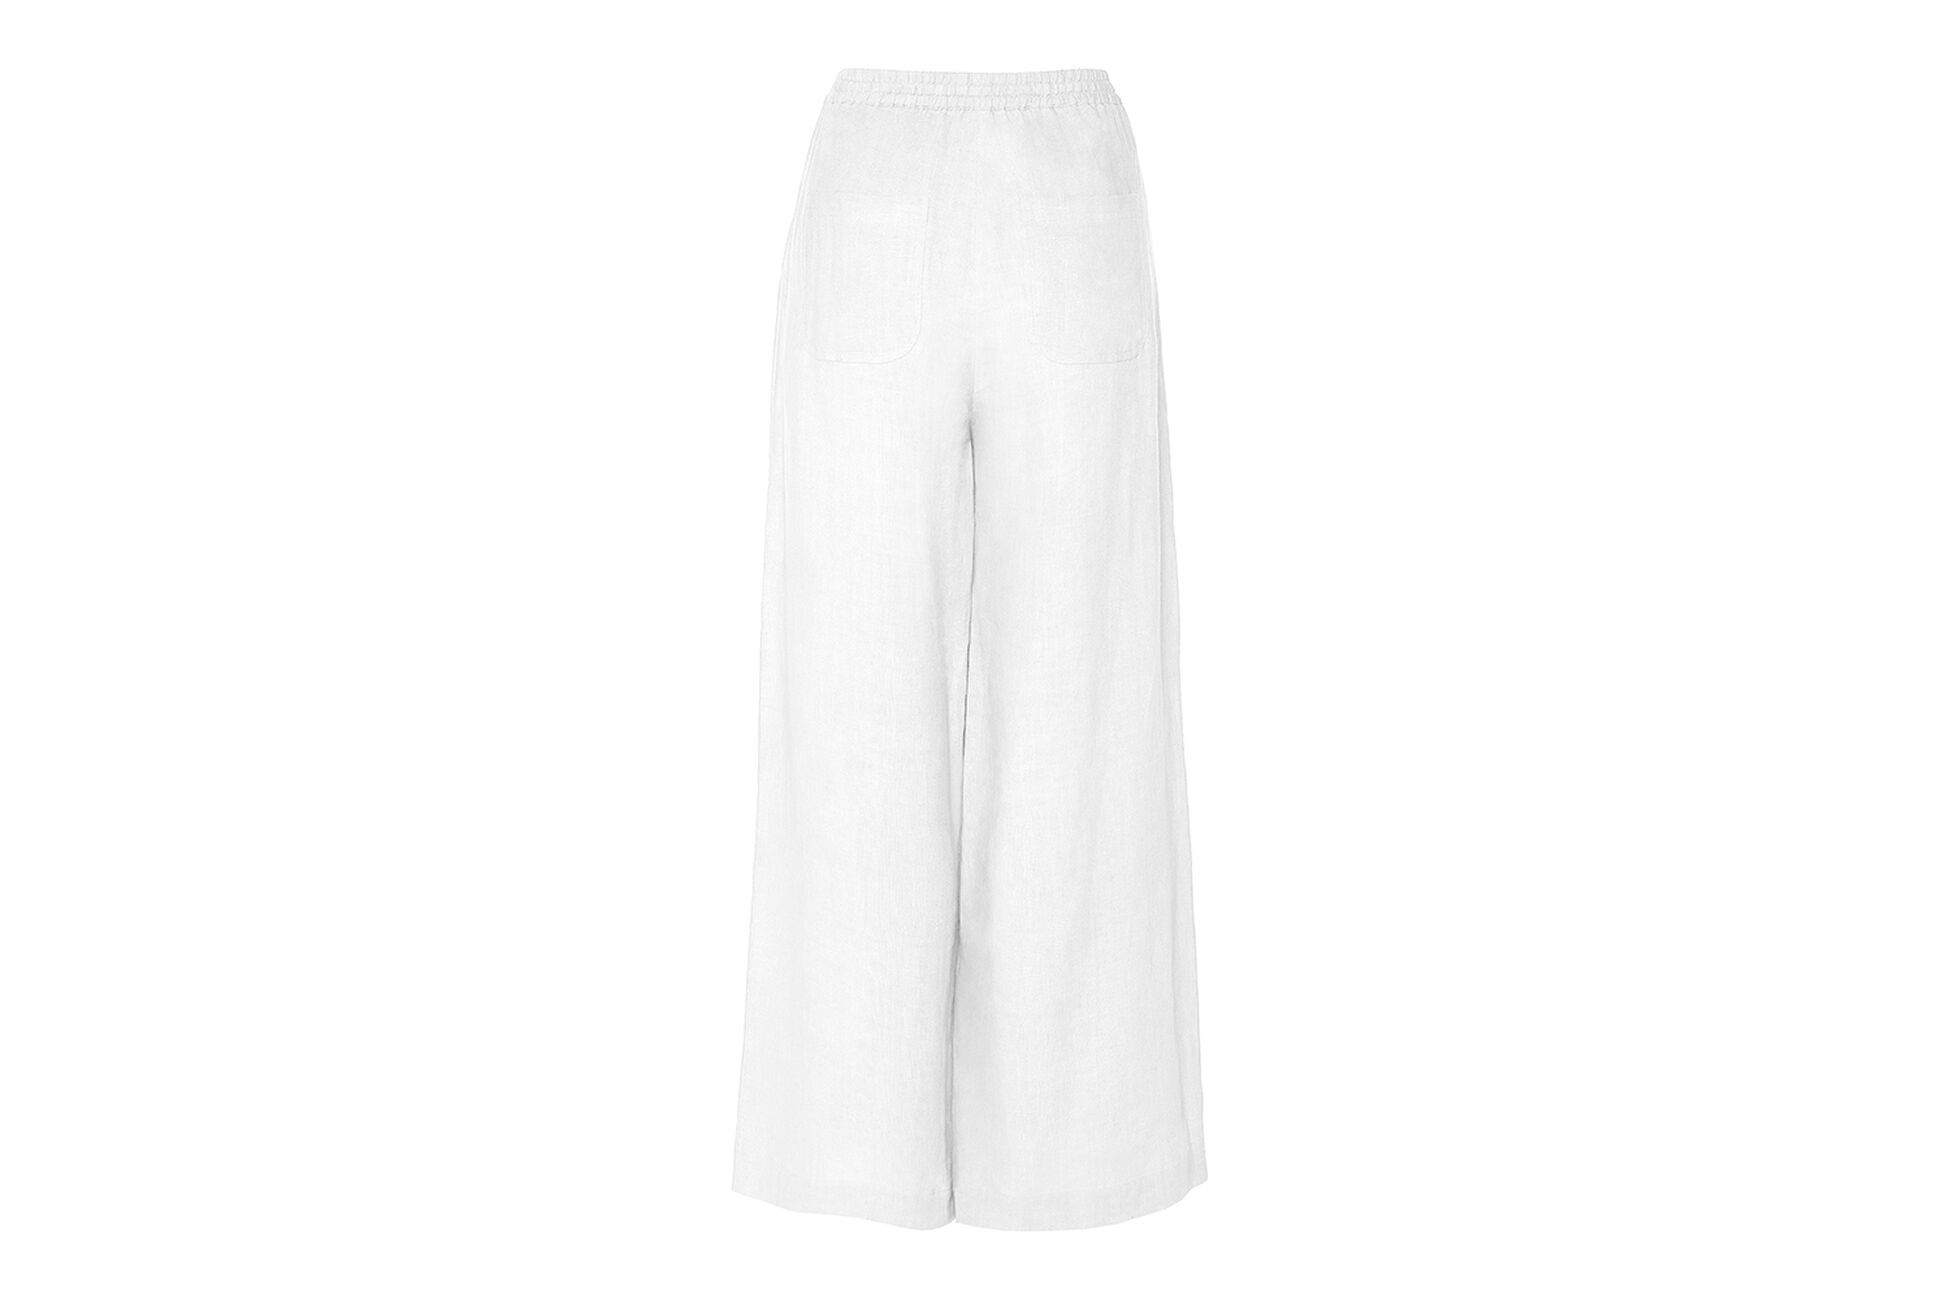 Select Pantalon large vue standard NaN